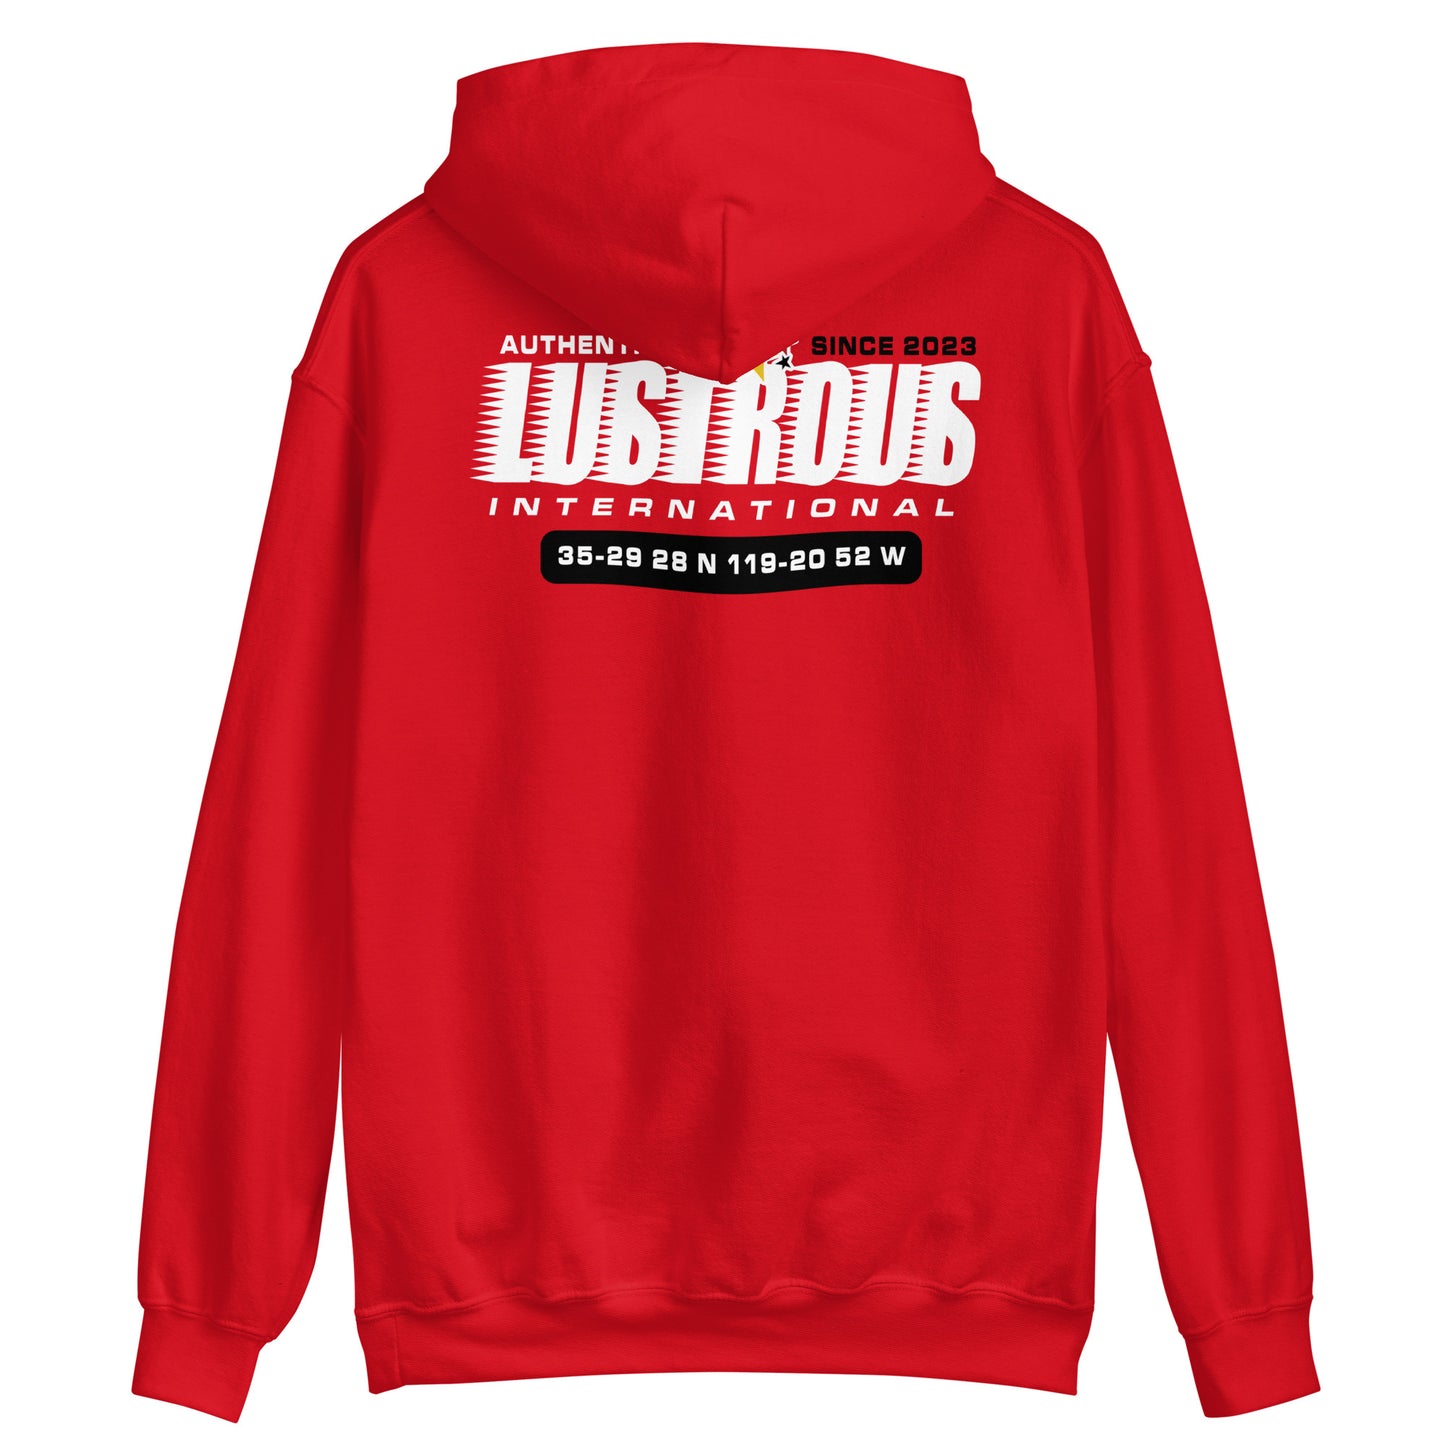 Lustrous Hoodie - International - Red